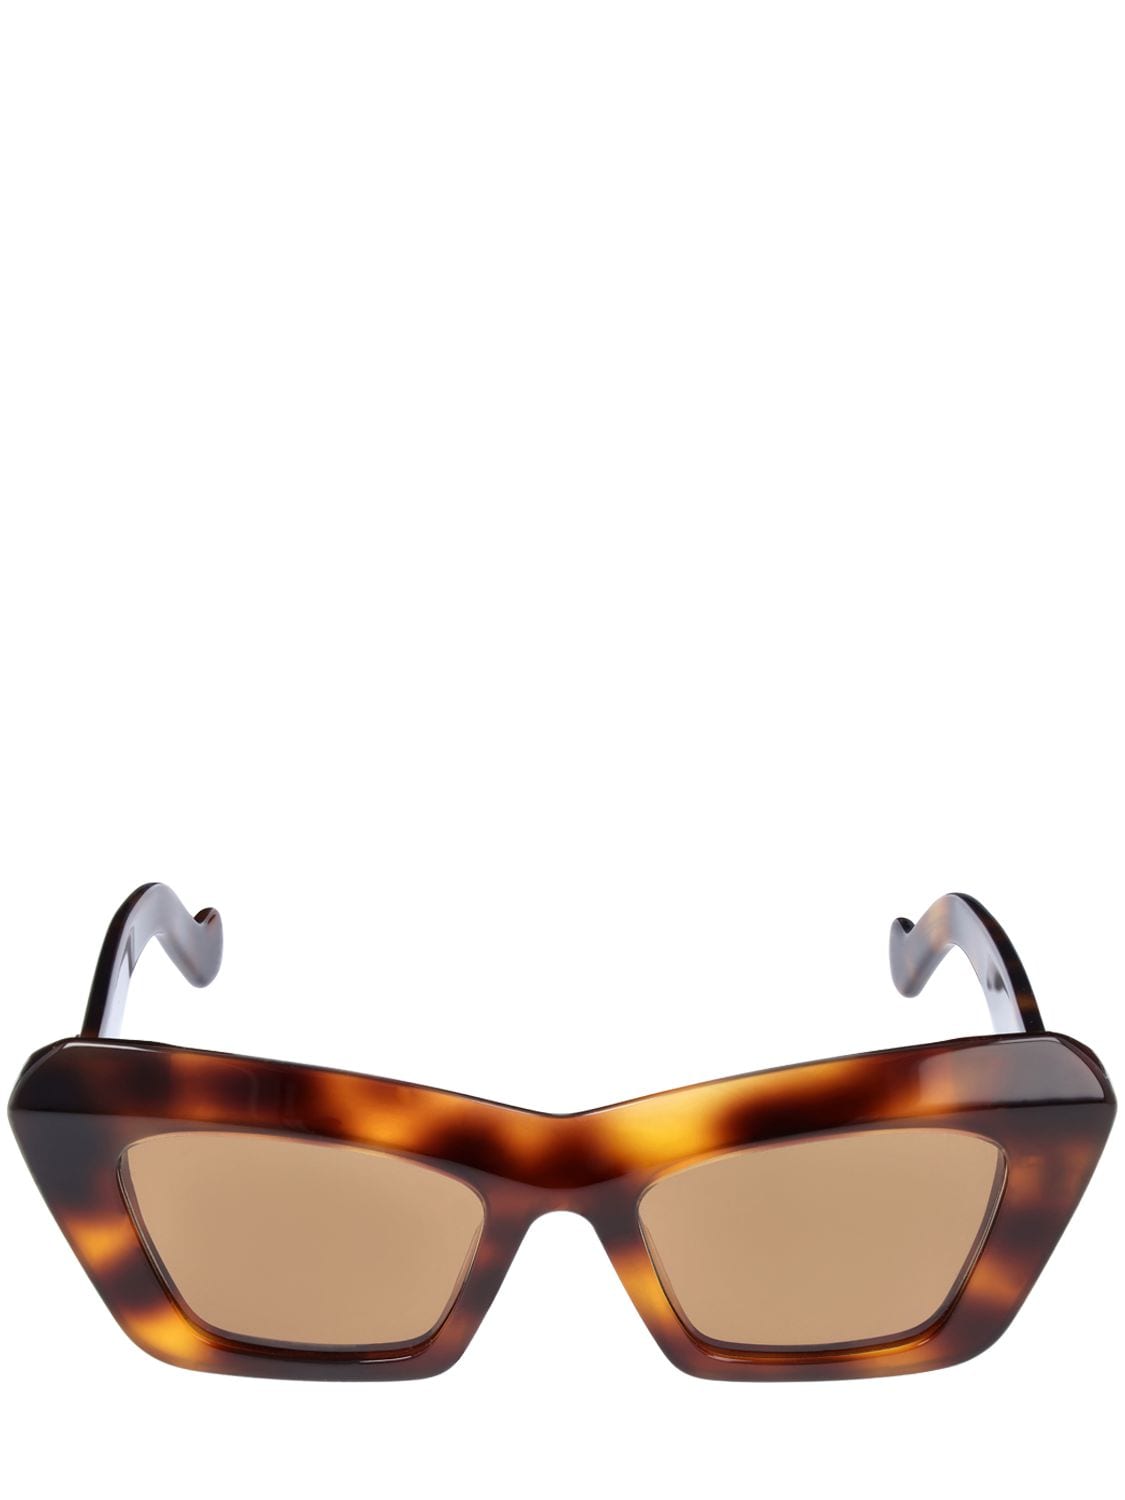 Sunglasses Loewe Orange in Plastic - 35753487